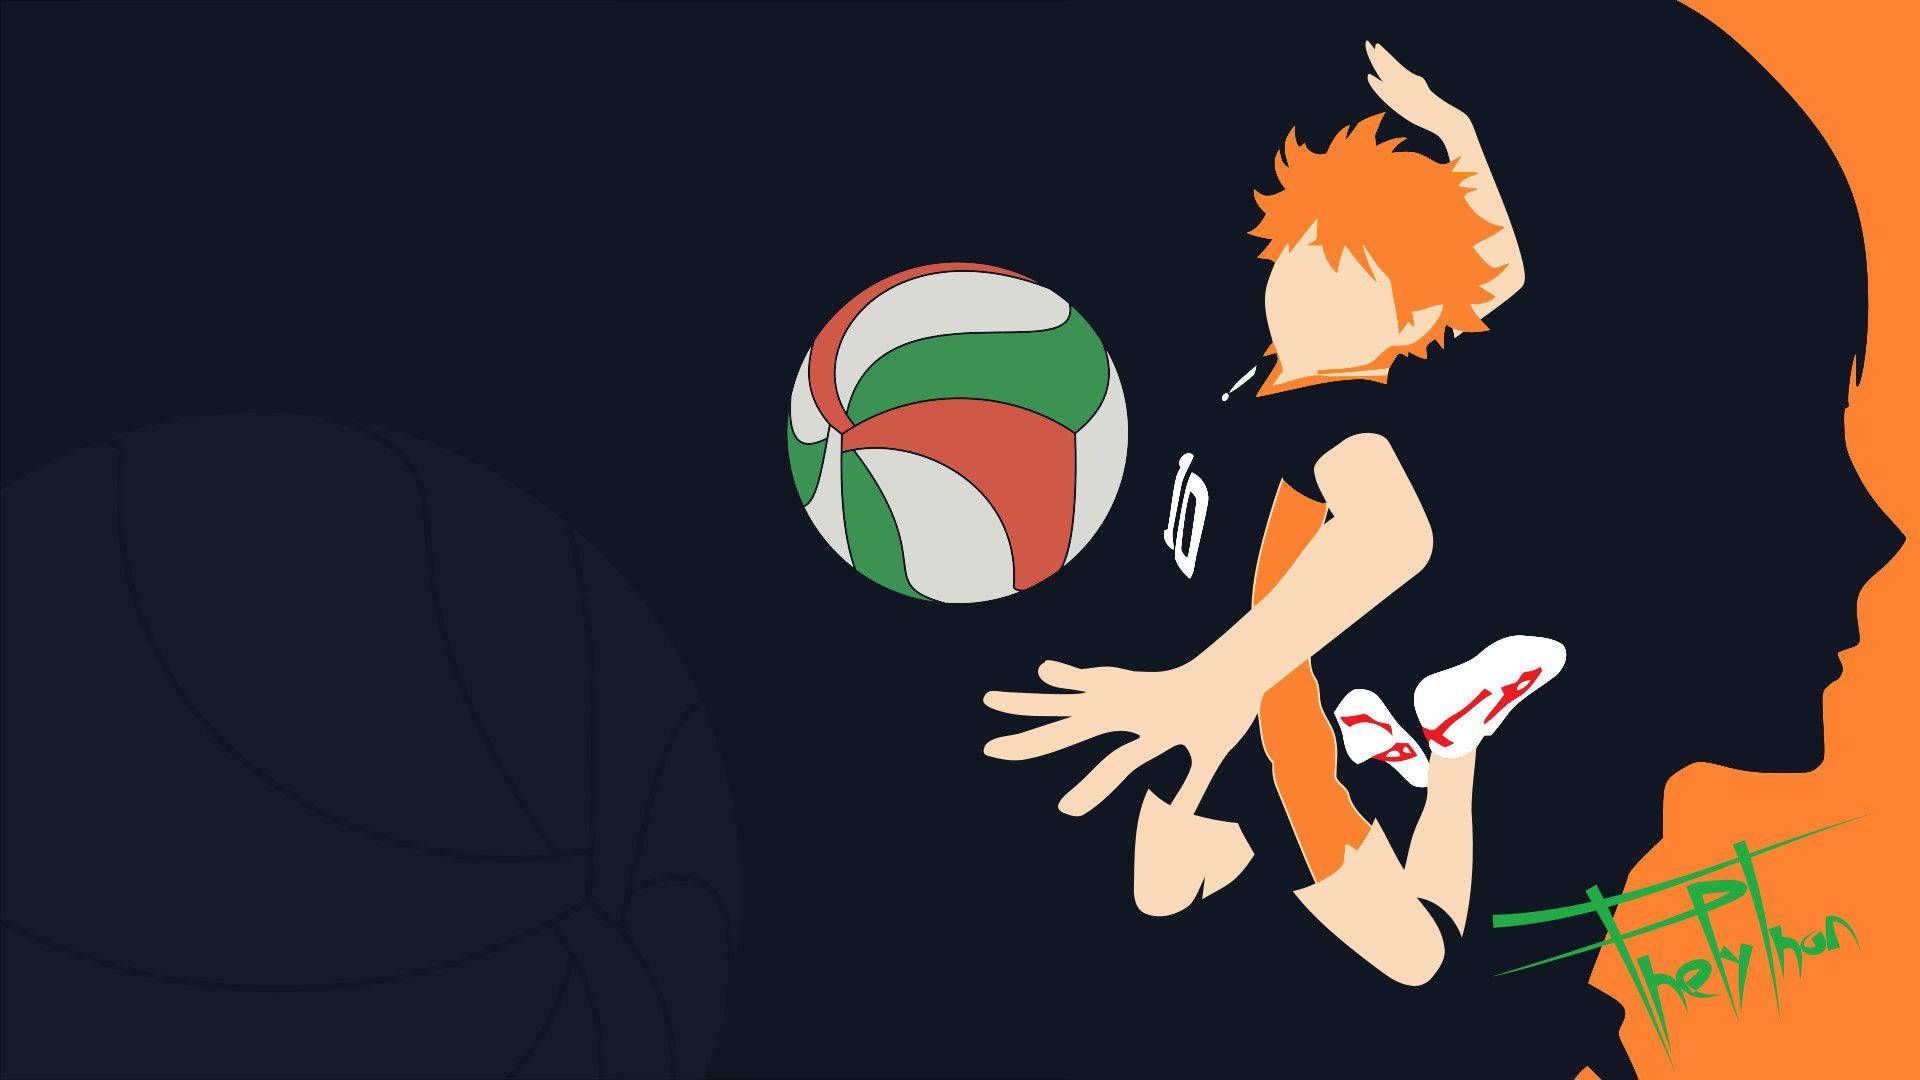 Hinatashouyou, Der Leidenschaftliche Volleyballspieler, Der Entschlossen Ist, Seine Träume Zu Erreichen. Wallpaper